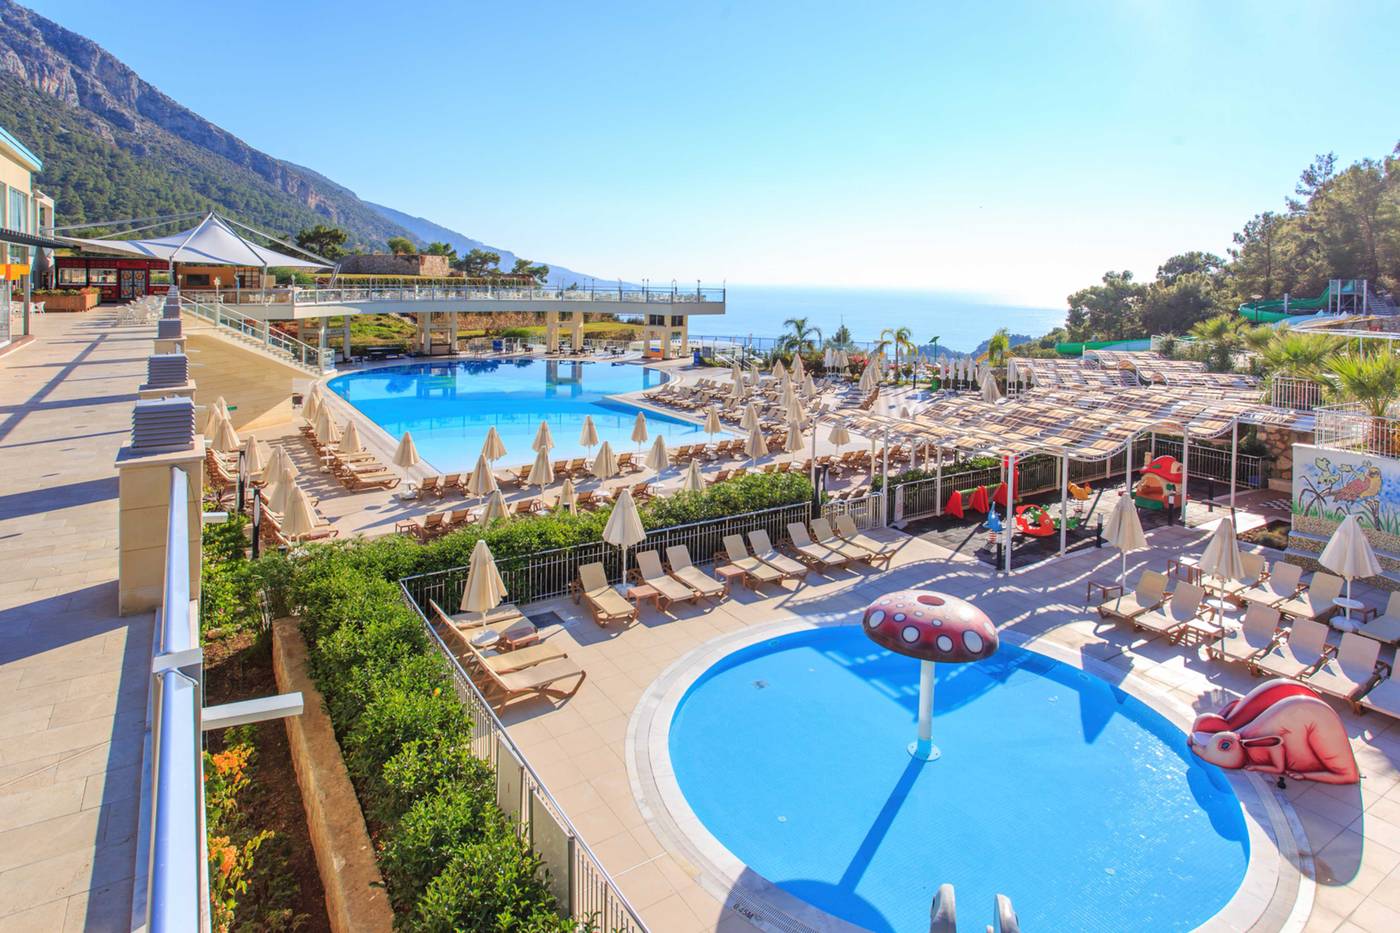 Orka Sunlife Resort And Spa in Dalaman, Tenerife, Turkey